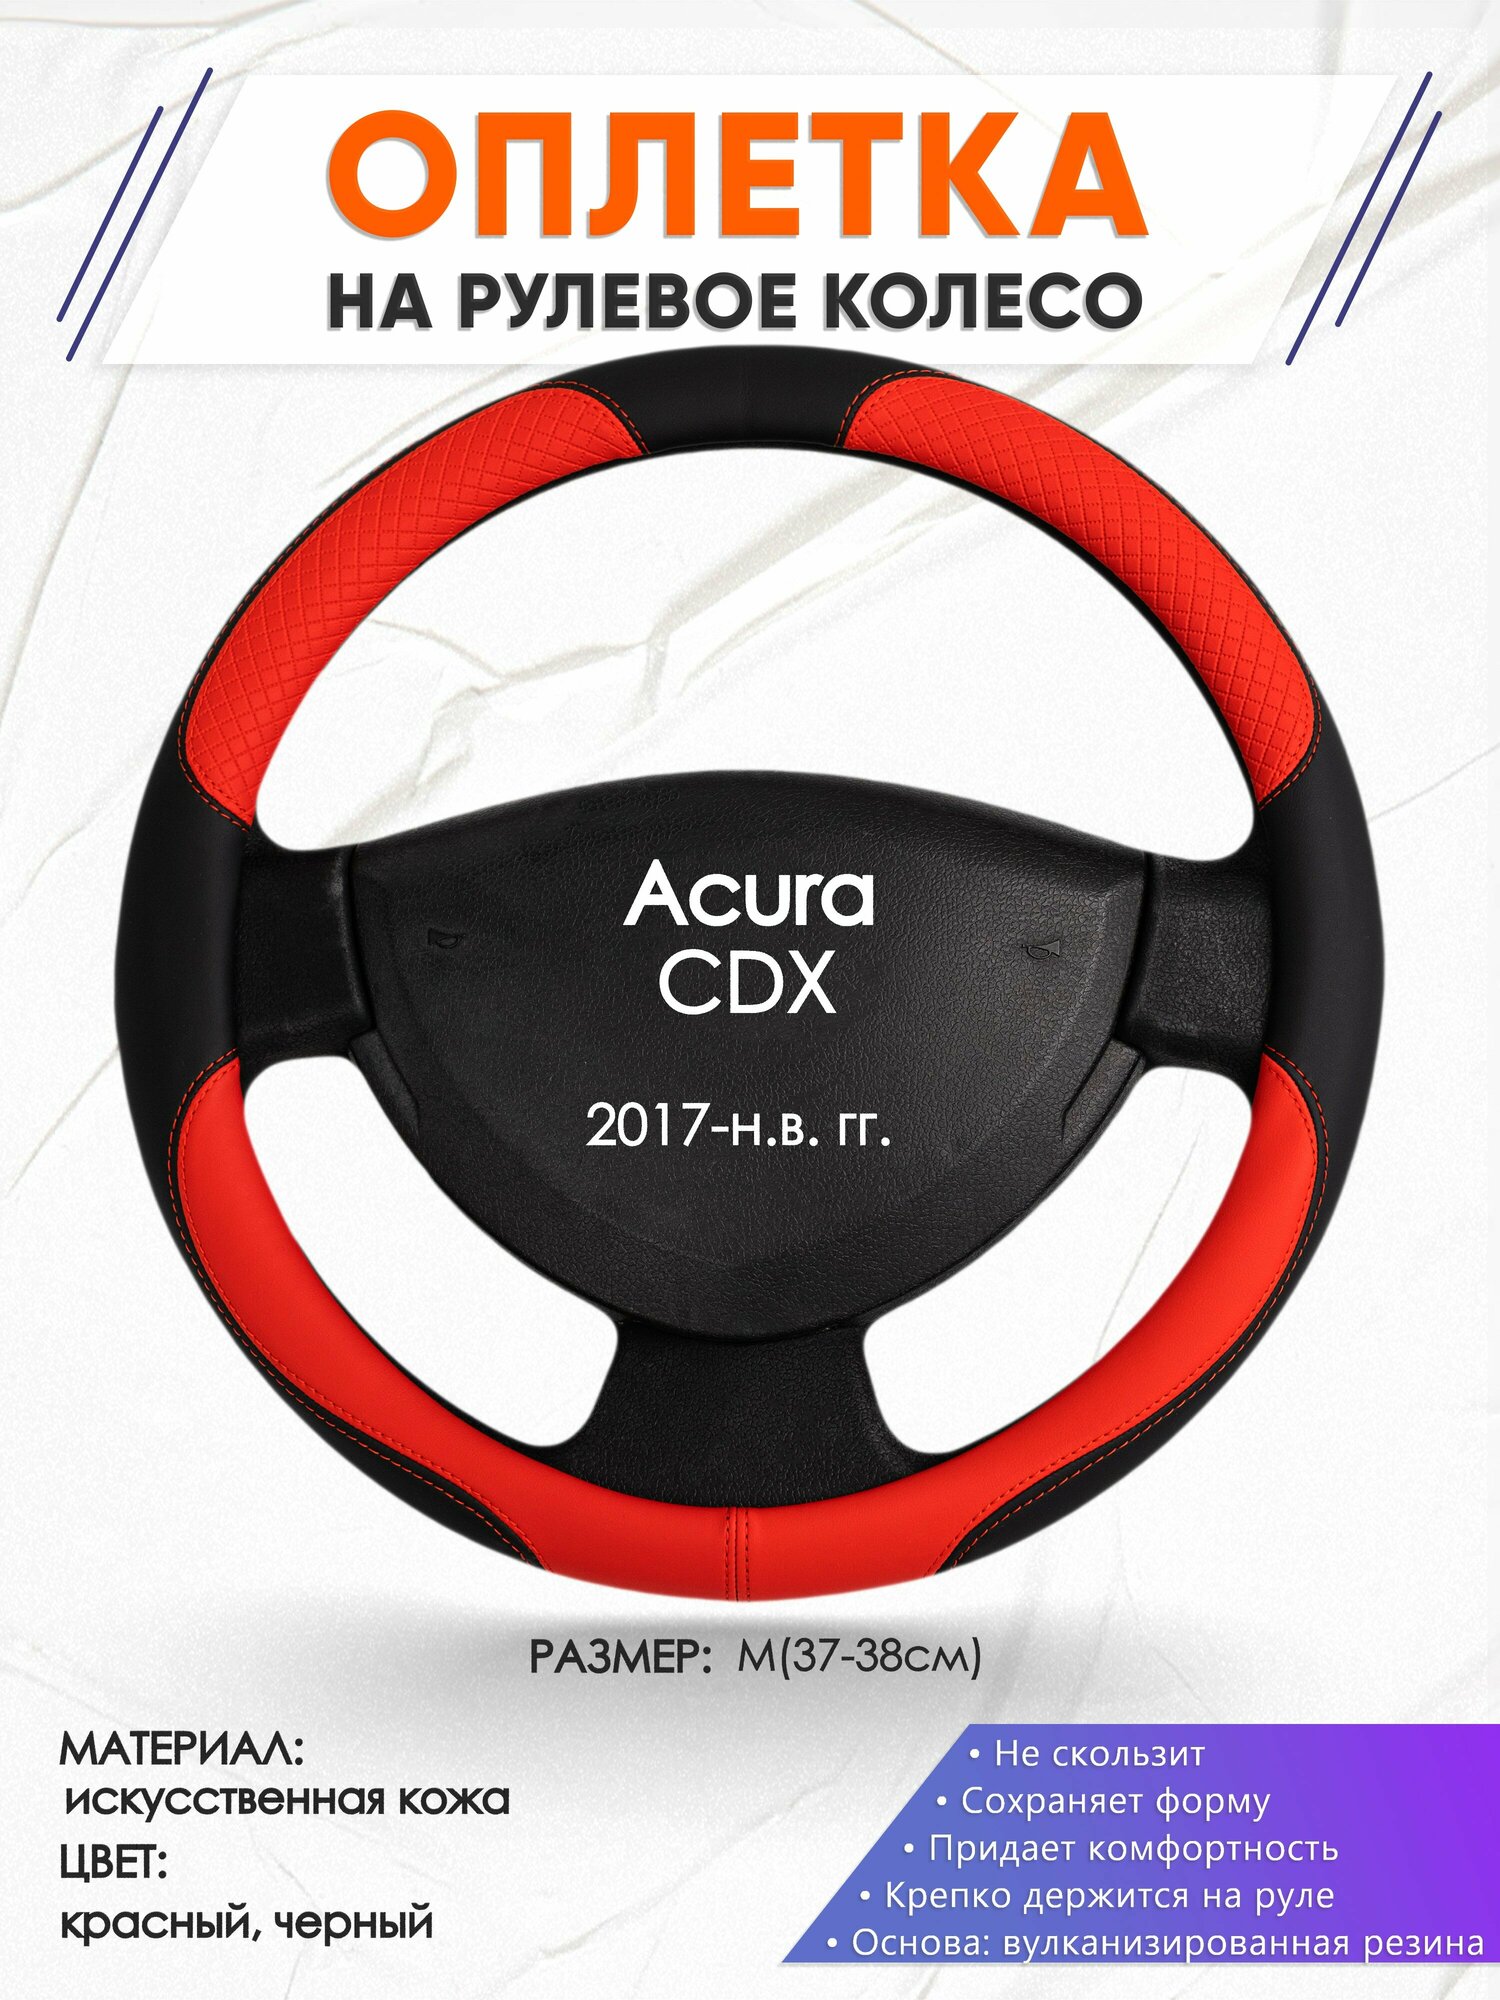 Оплетка наруль для Acura CDX(Акура СДХ) 2017-н.в. годов выпуска, размер M(37-38см), Искусственная кожа 05